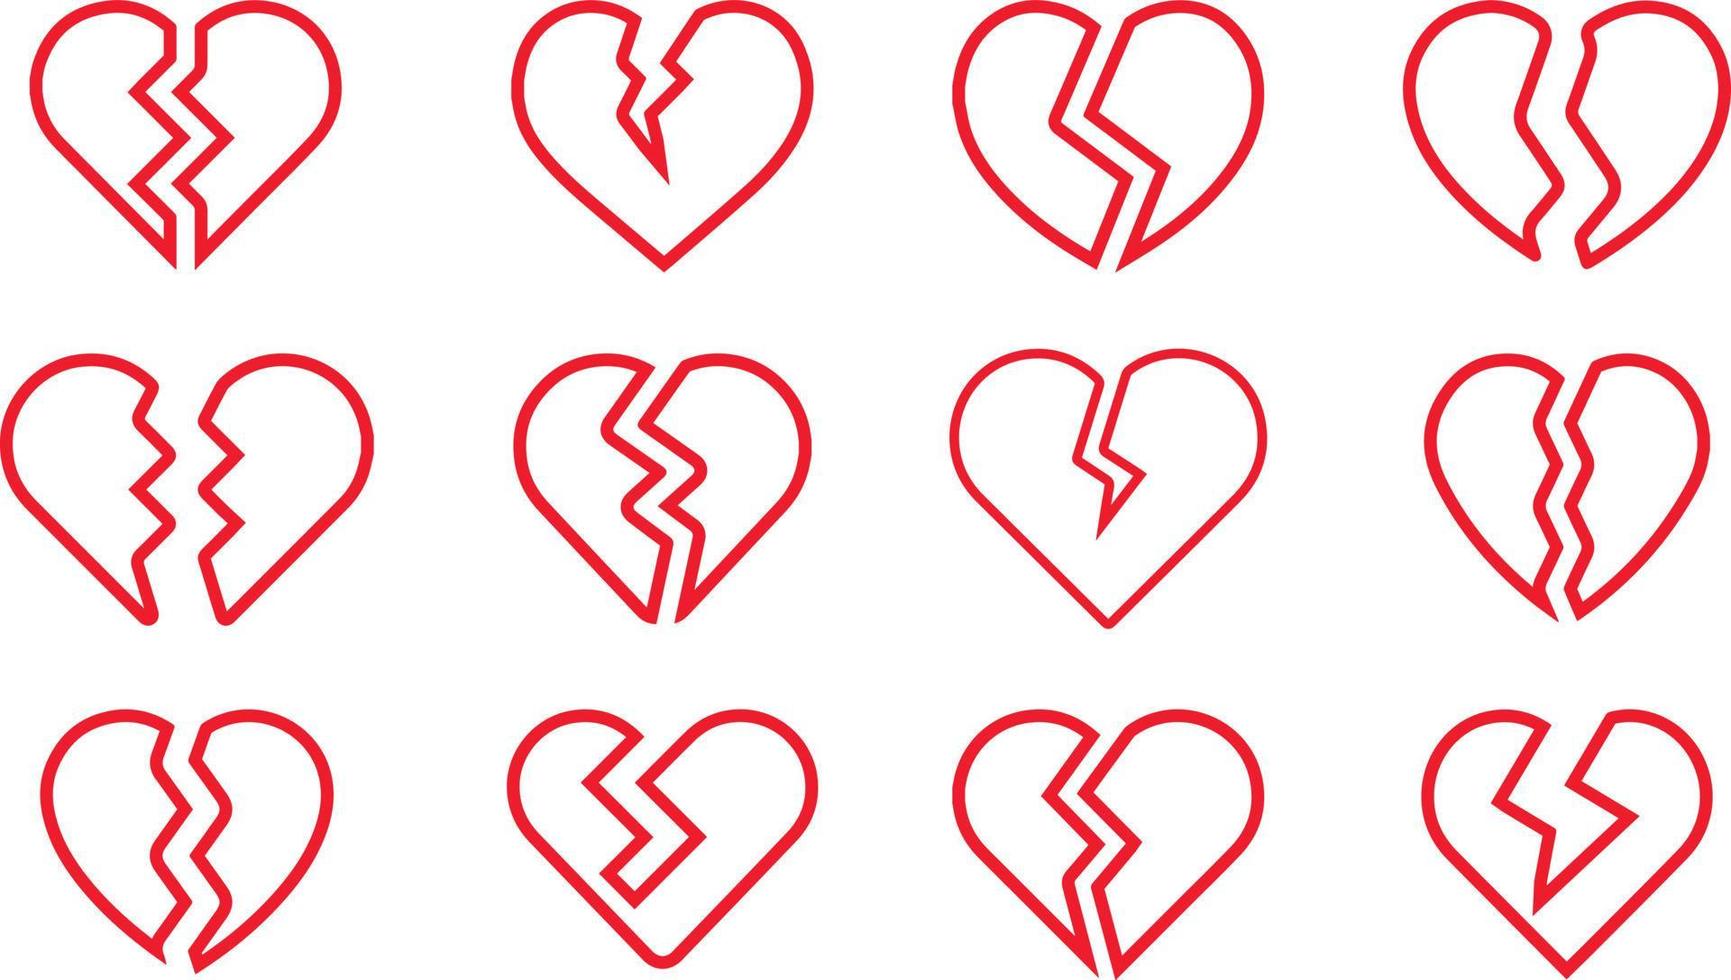 röd linje brutet hjärta set. trasiga hjärtformade symboler. vektor